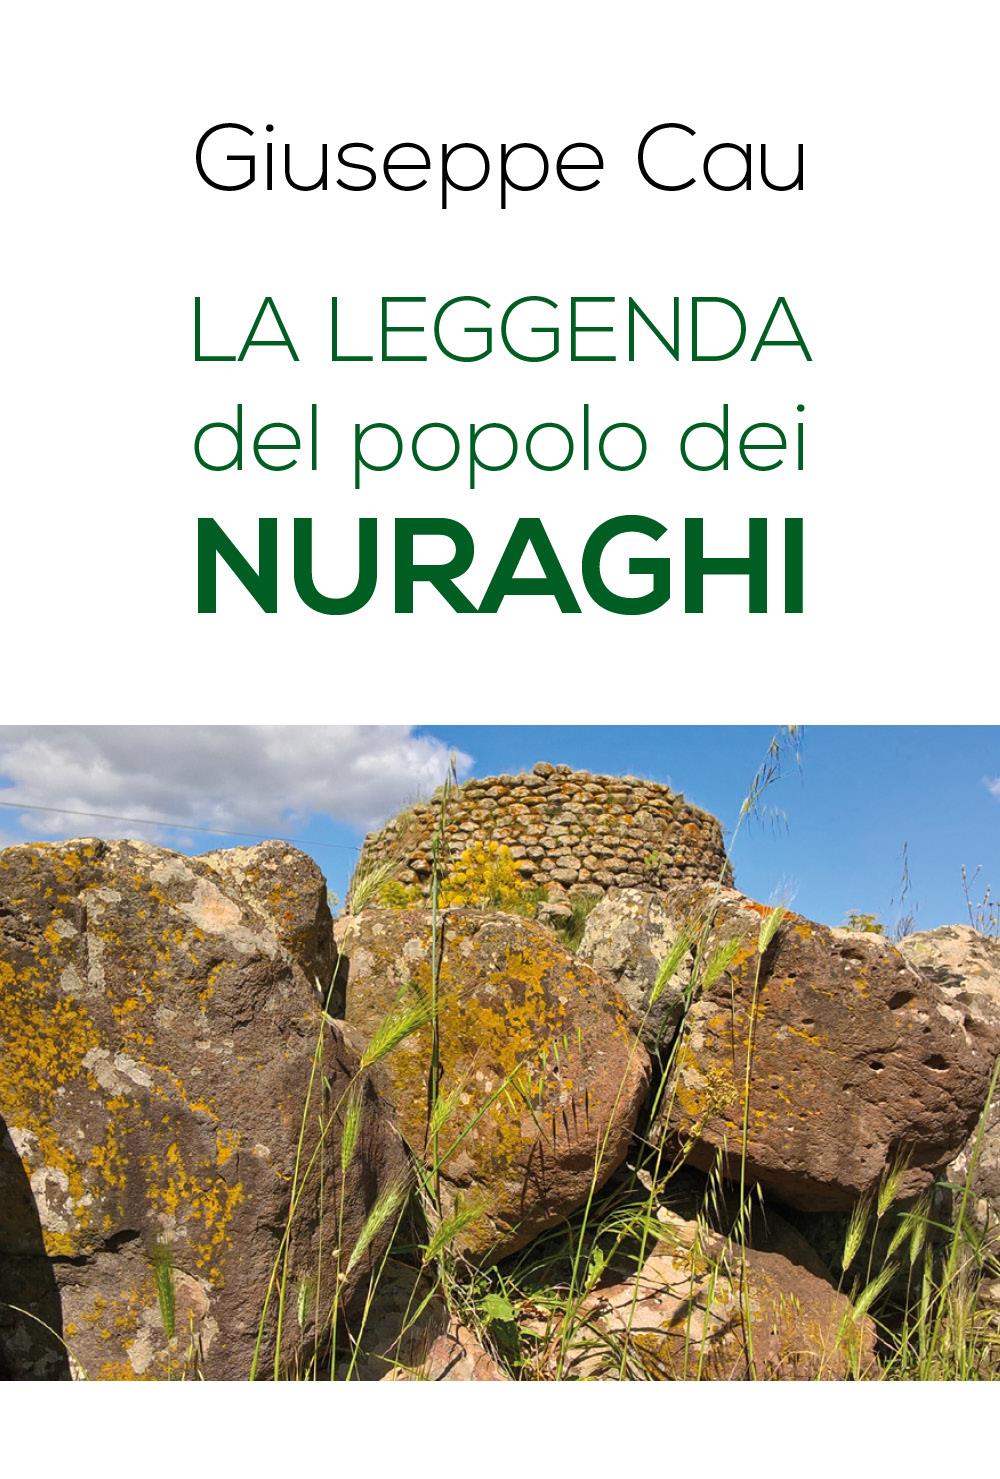 La leggenda del popolo dei nuraghi